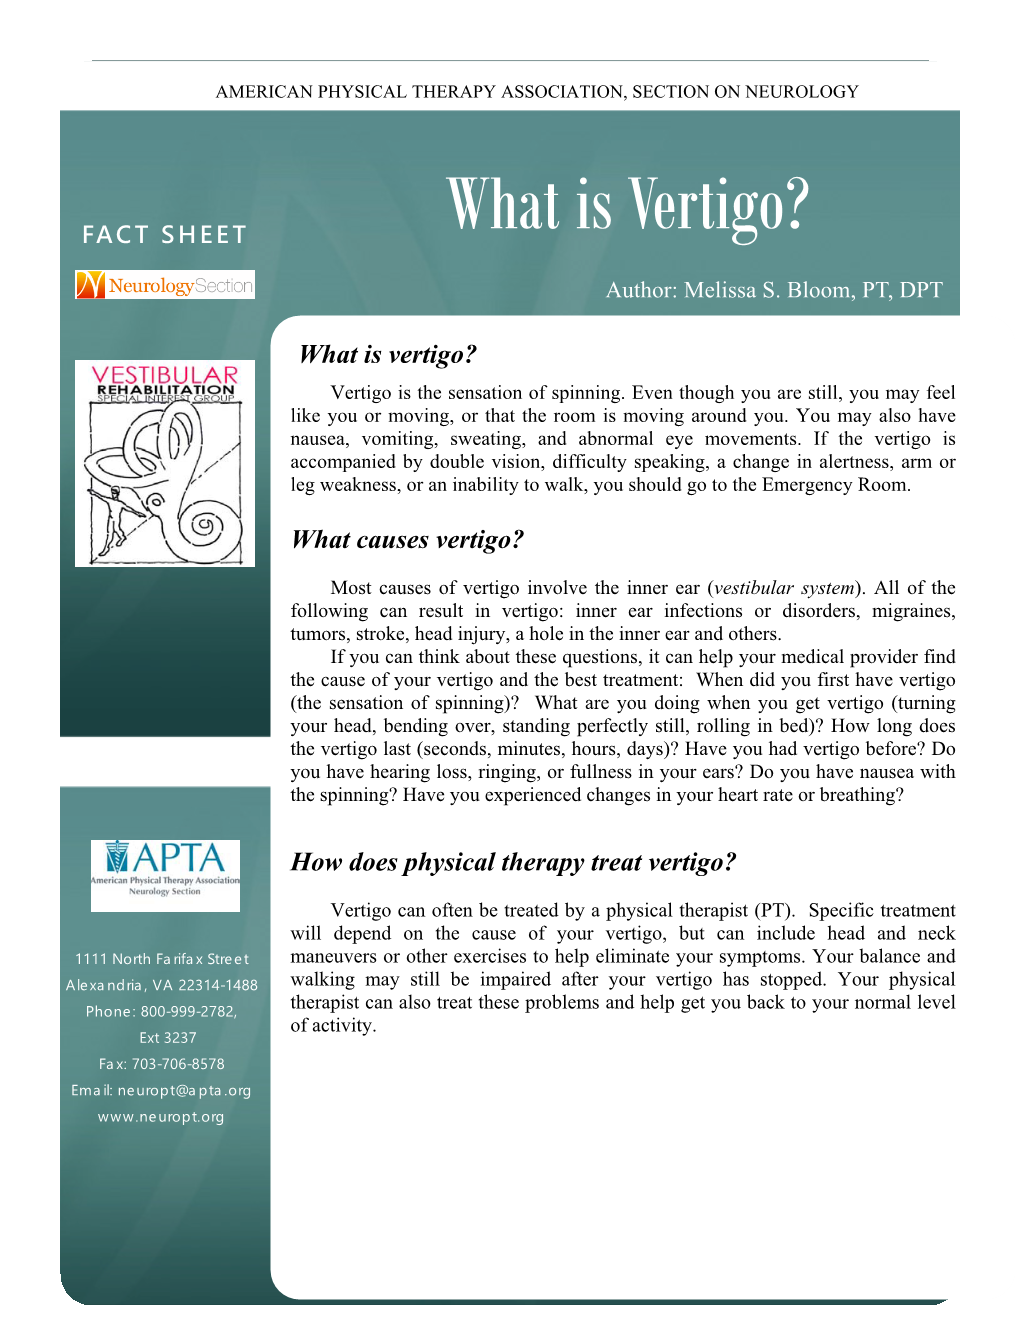 What Is Vertigo?